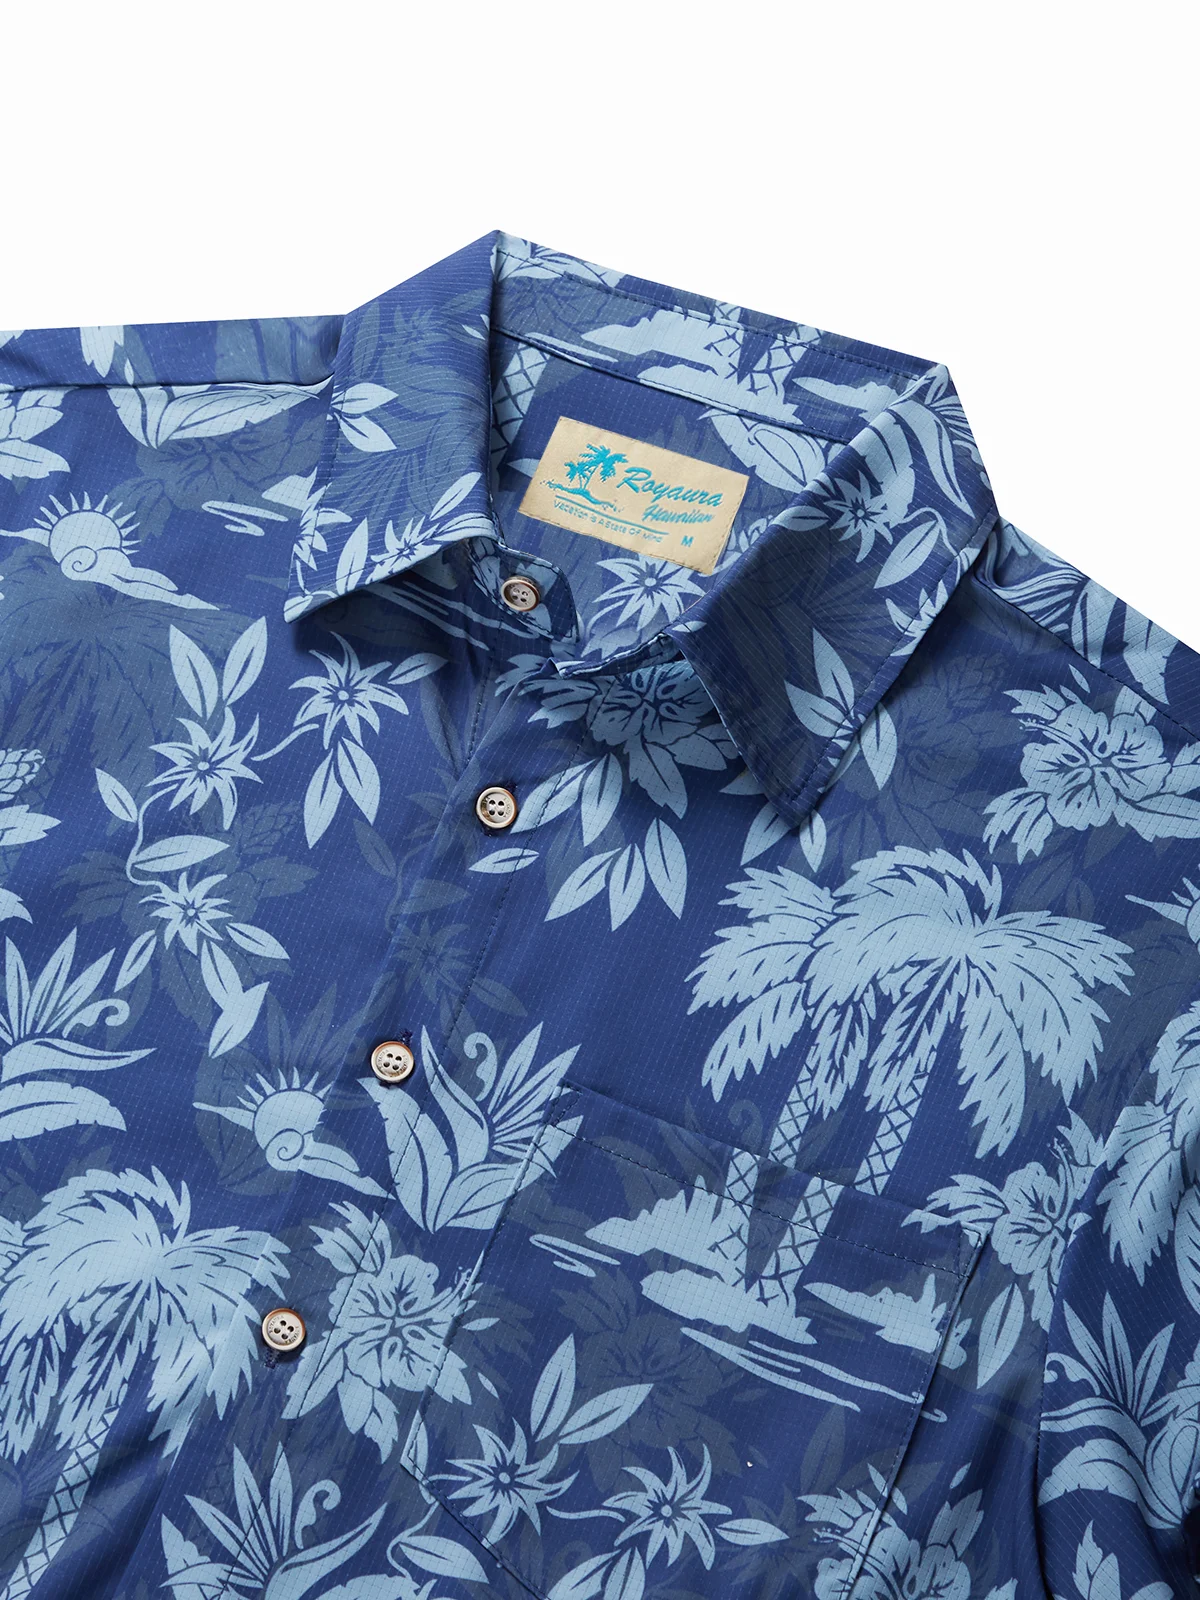 Royaura® Cool Ice Men's Hawaiian Shirts Island Coconut Tree Sweat ...